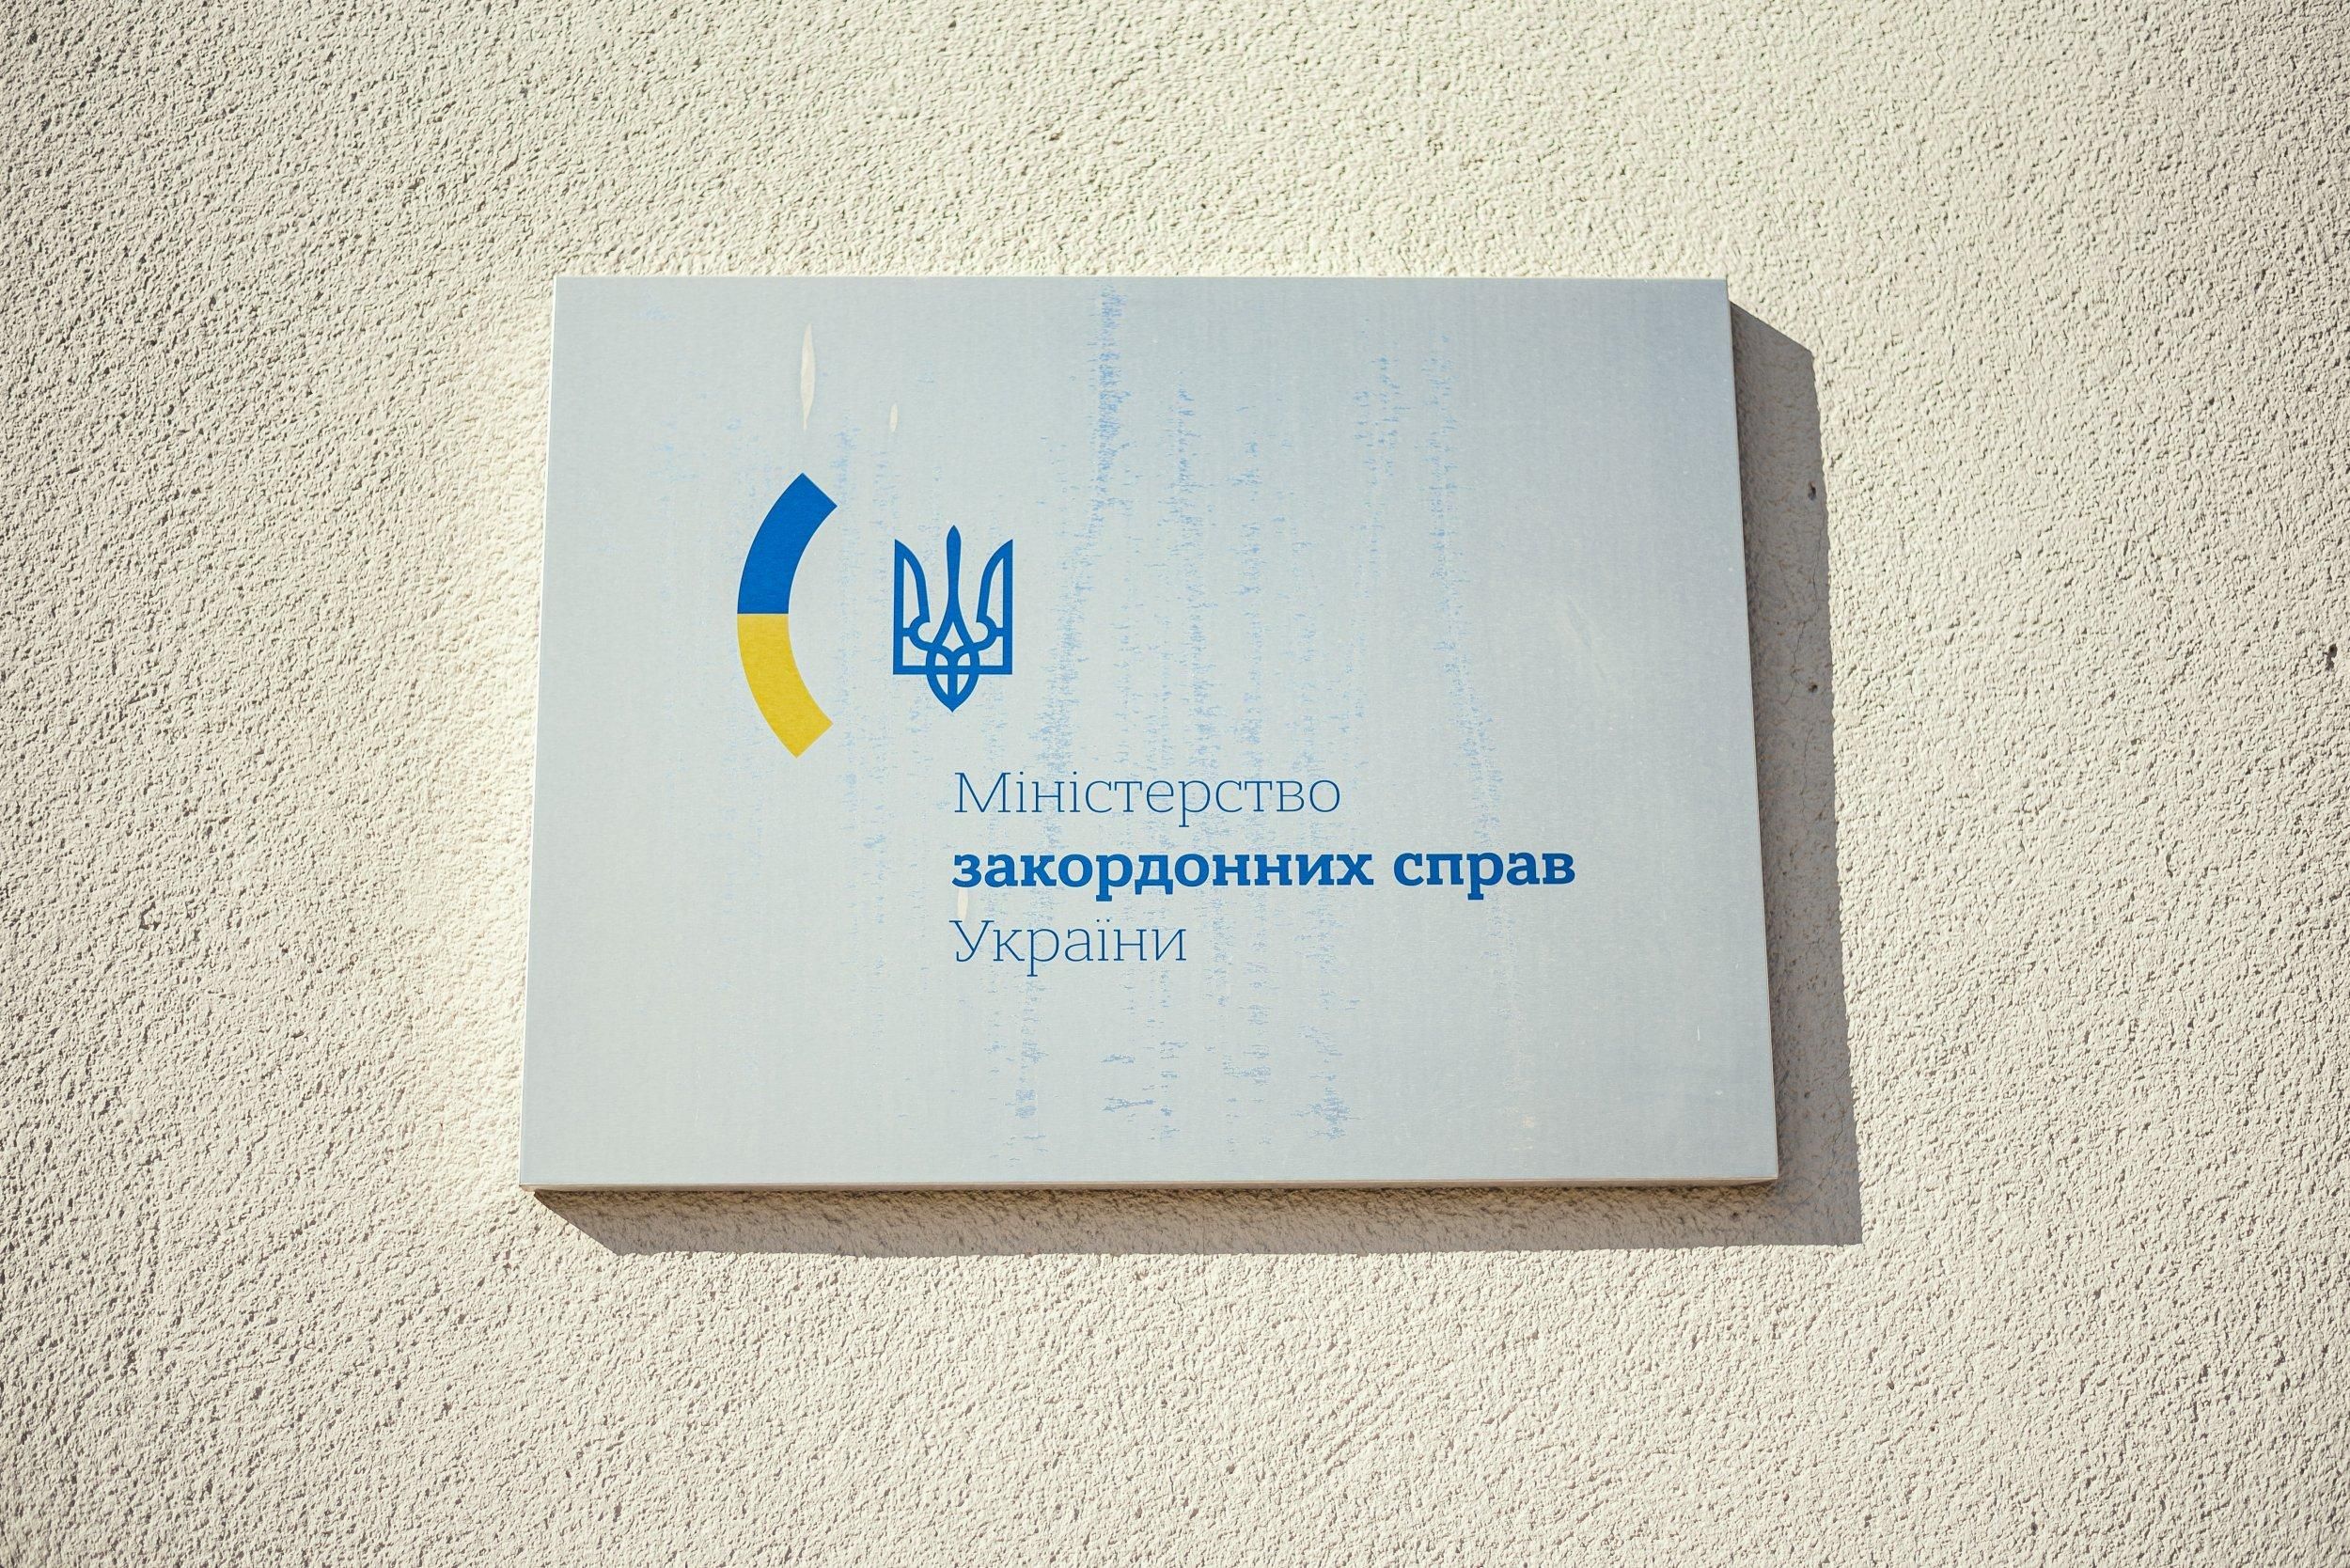 Украина обсуждает с иностранными партнерами усиление кибербезопасности, — МИД